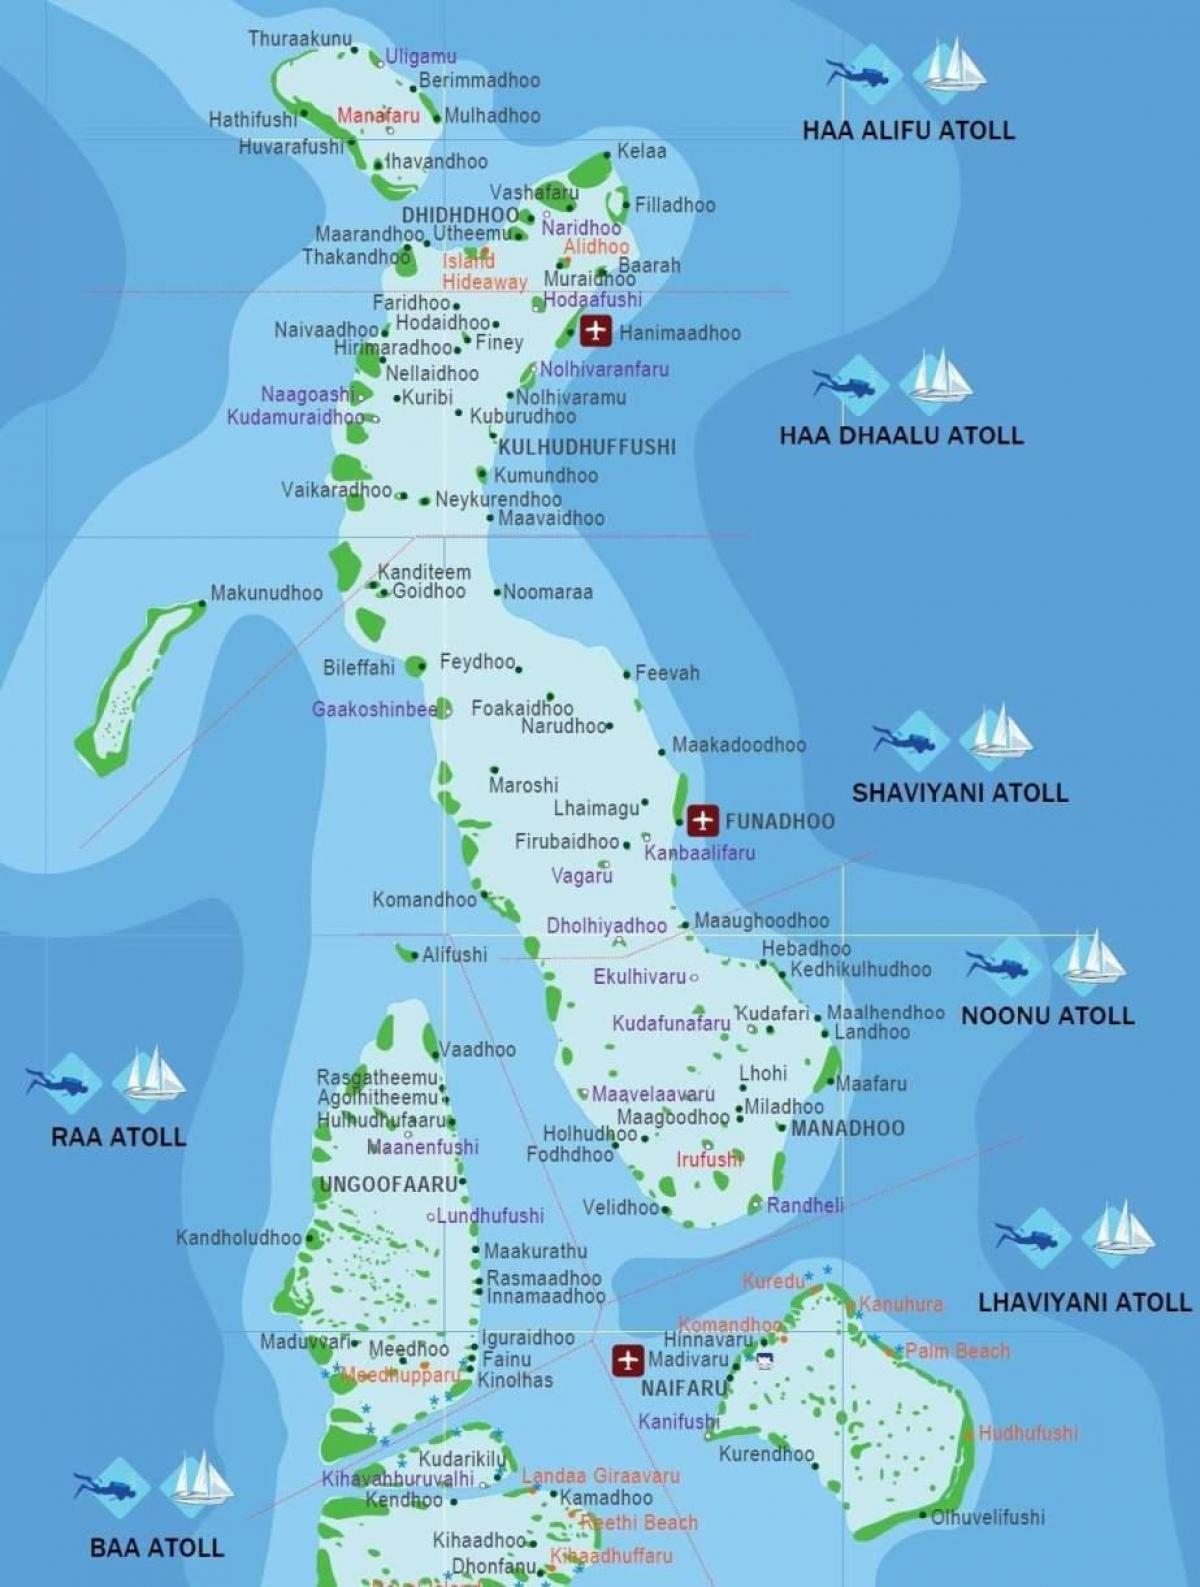 mapa completo de maldivas